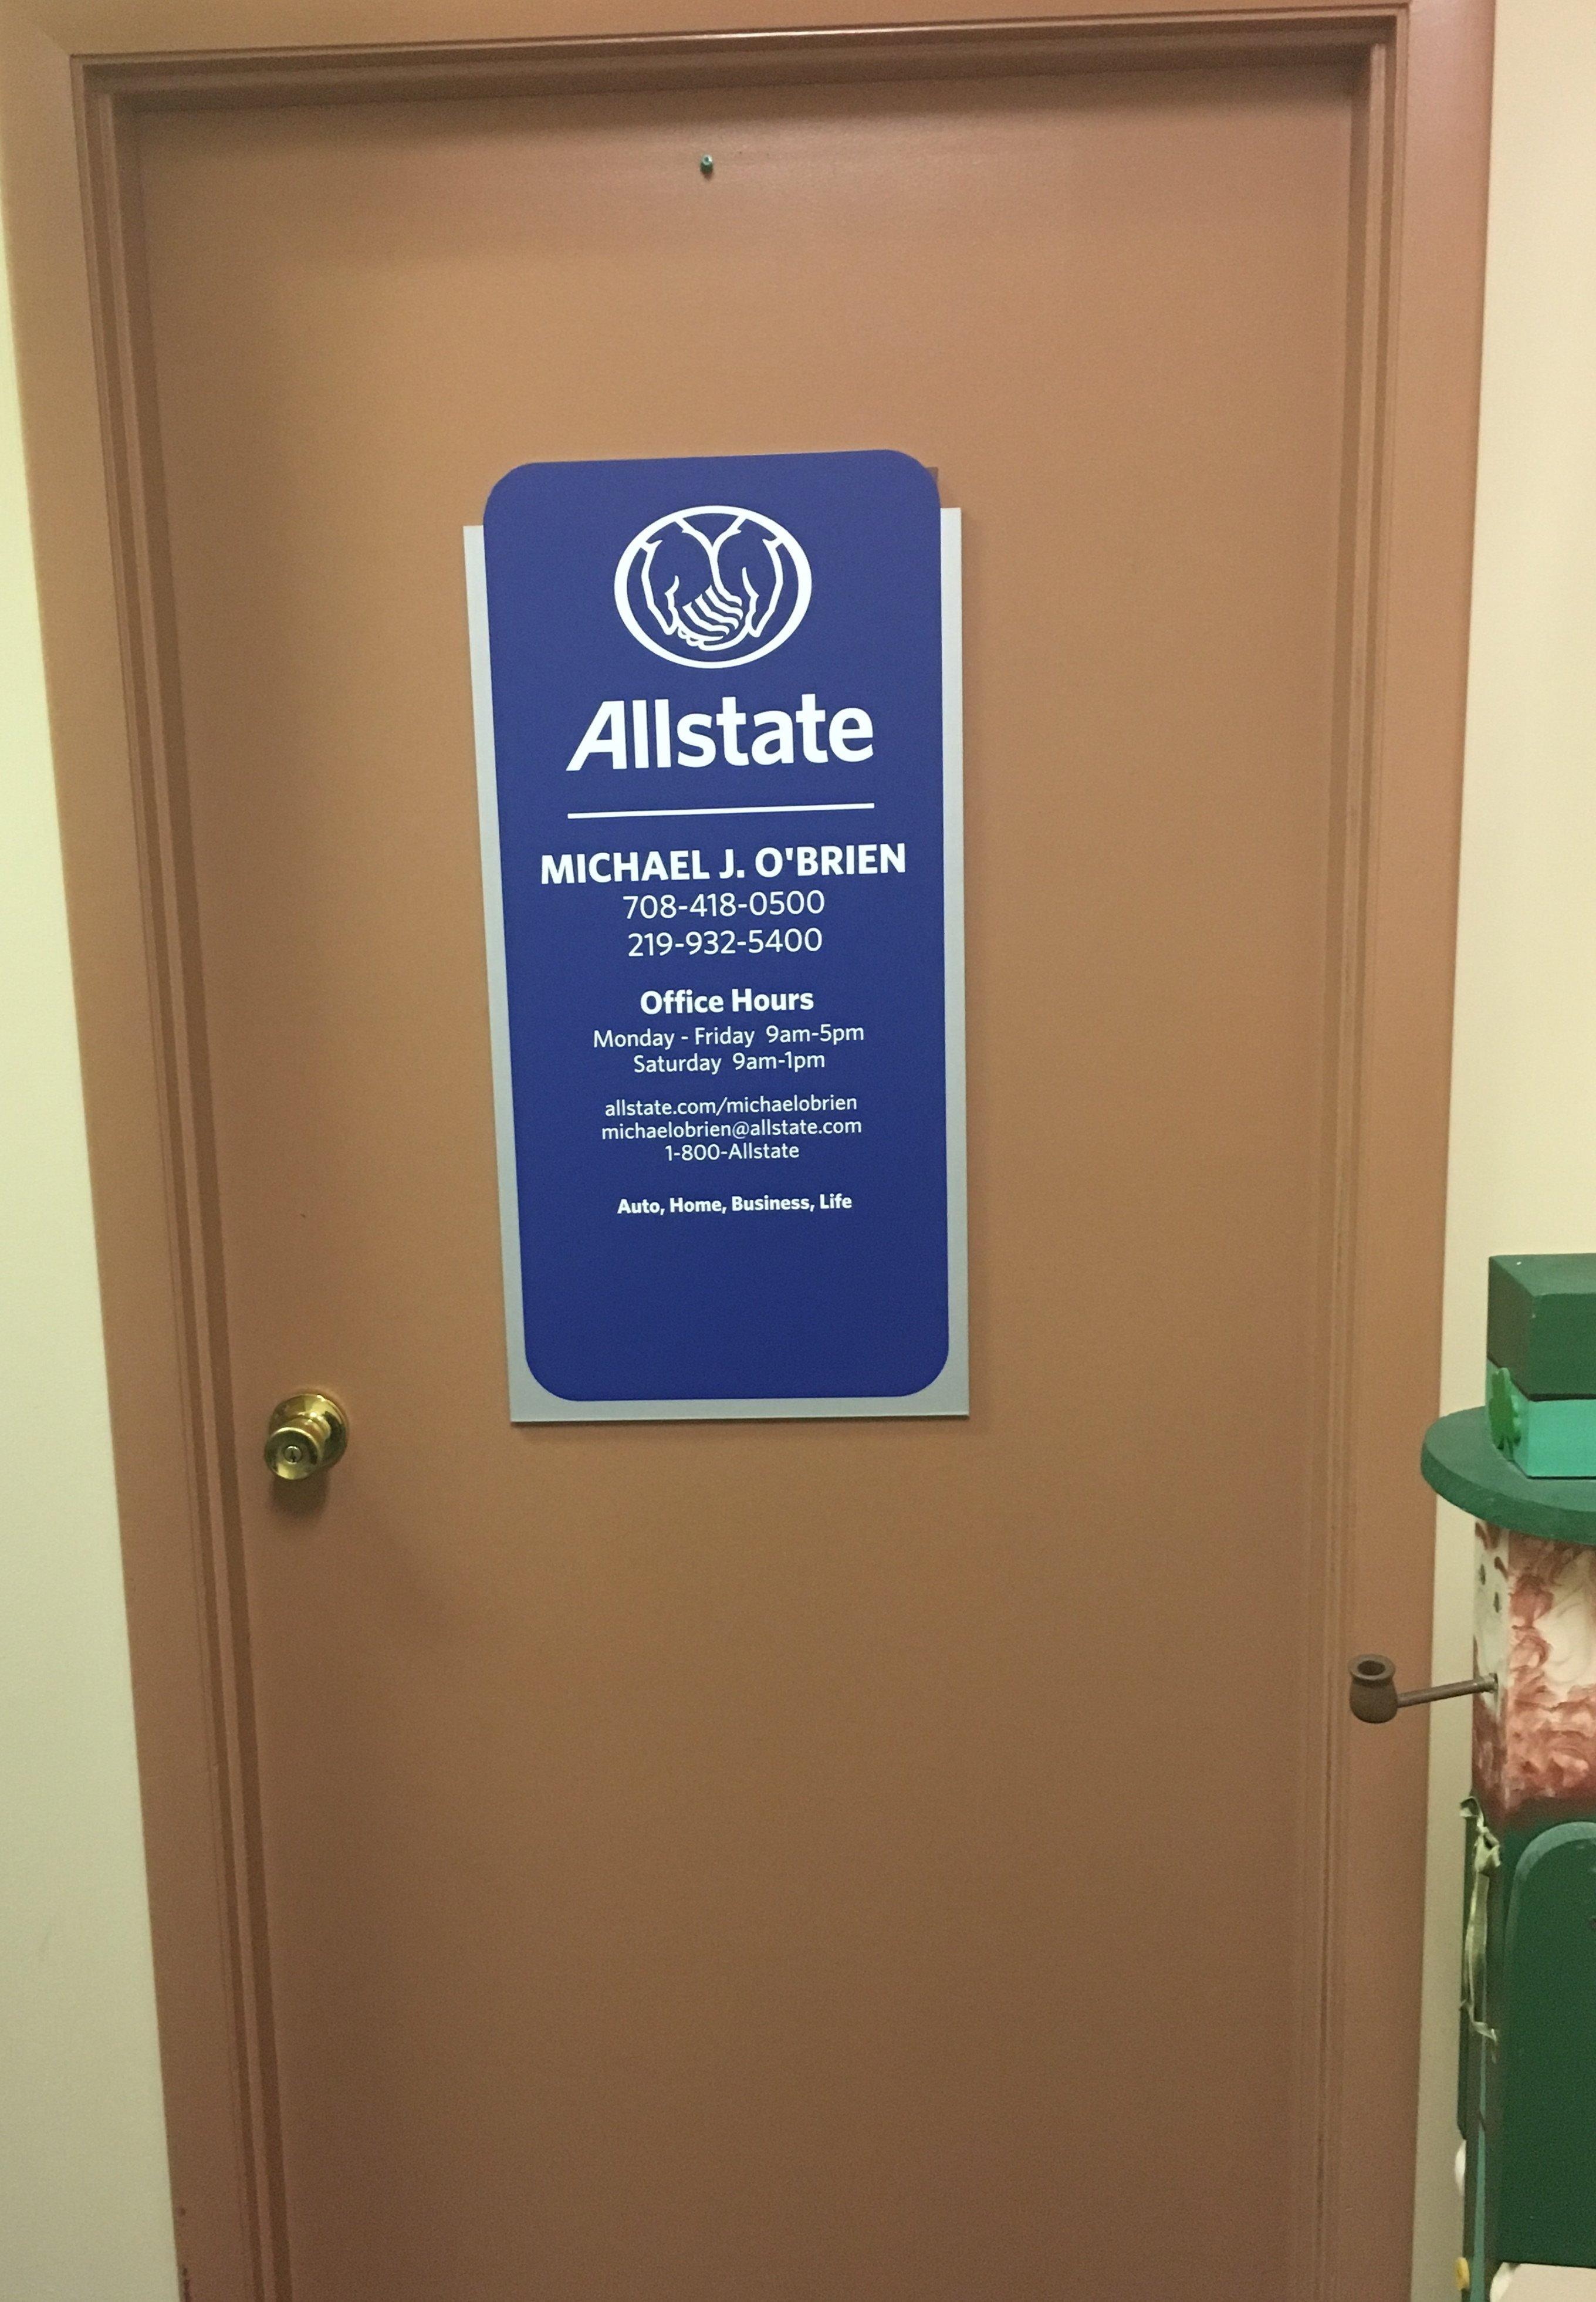 Michael O'Brien: Allstate Insurance Photo